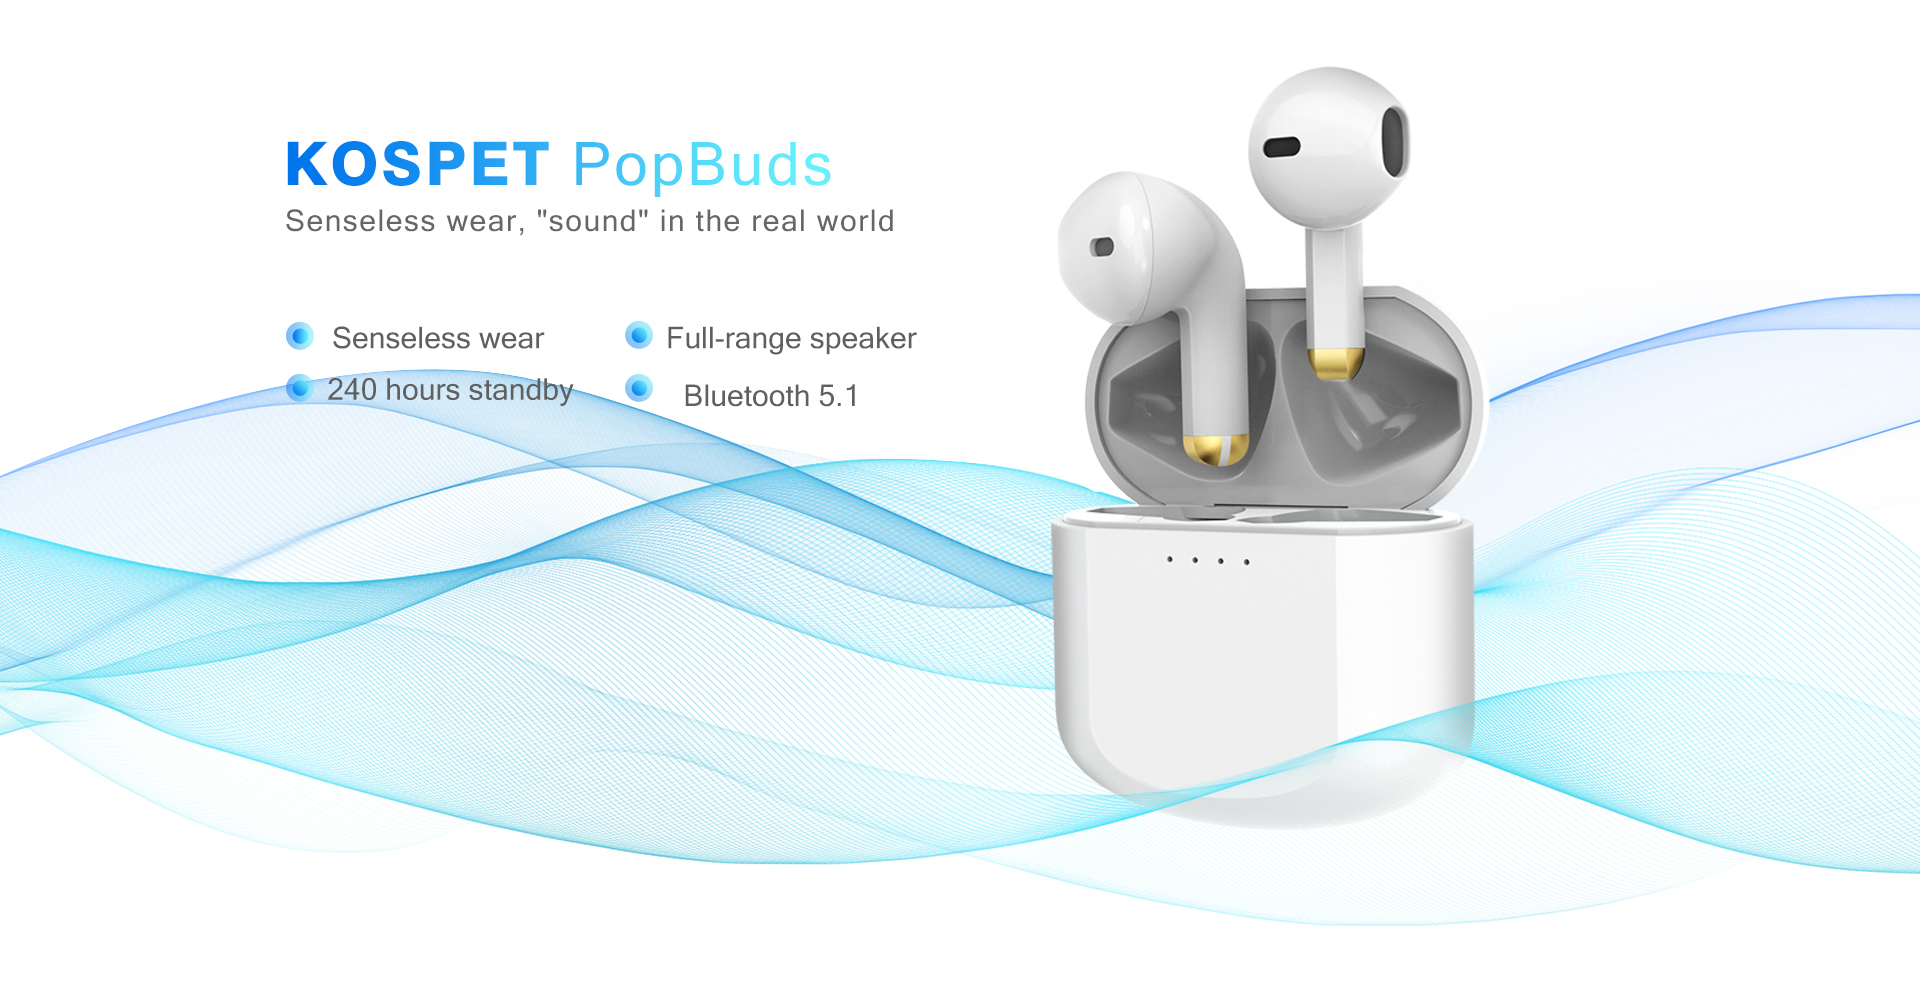 Kospet-PopBuds-Mini-Wireless-Headphone-bluetooth-Earphones-Waterproof-Earpieces-9D-Stereo-Sport-Earb-1828350-1